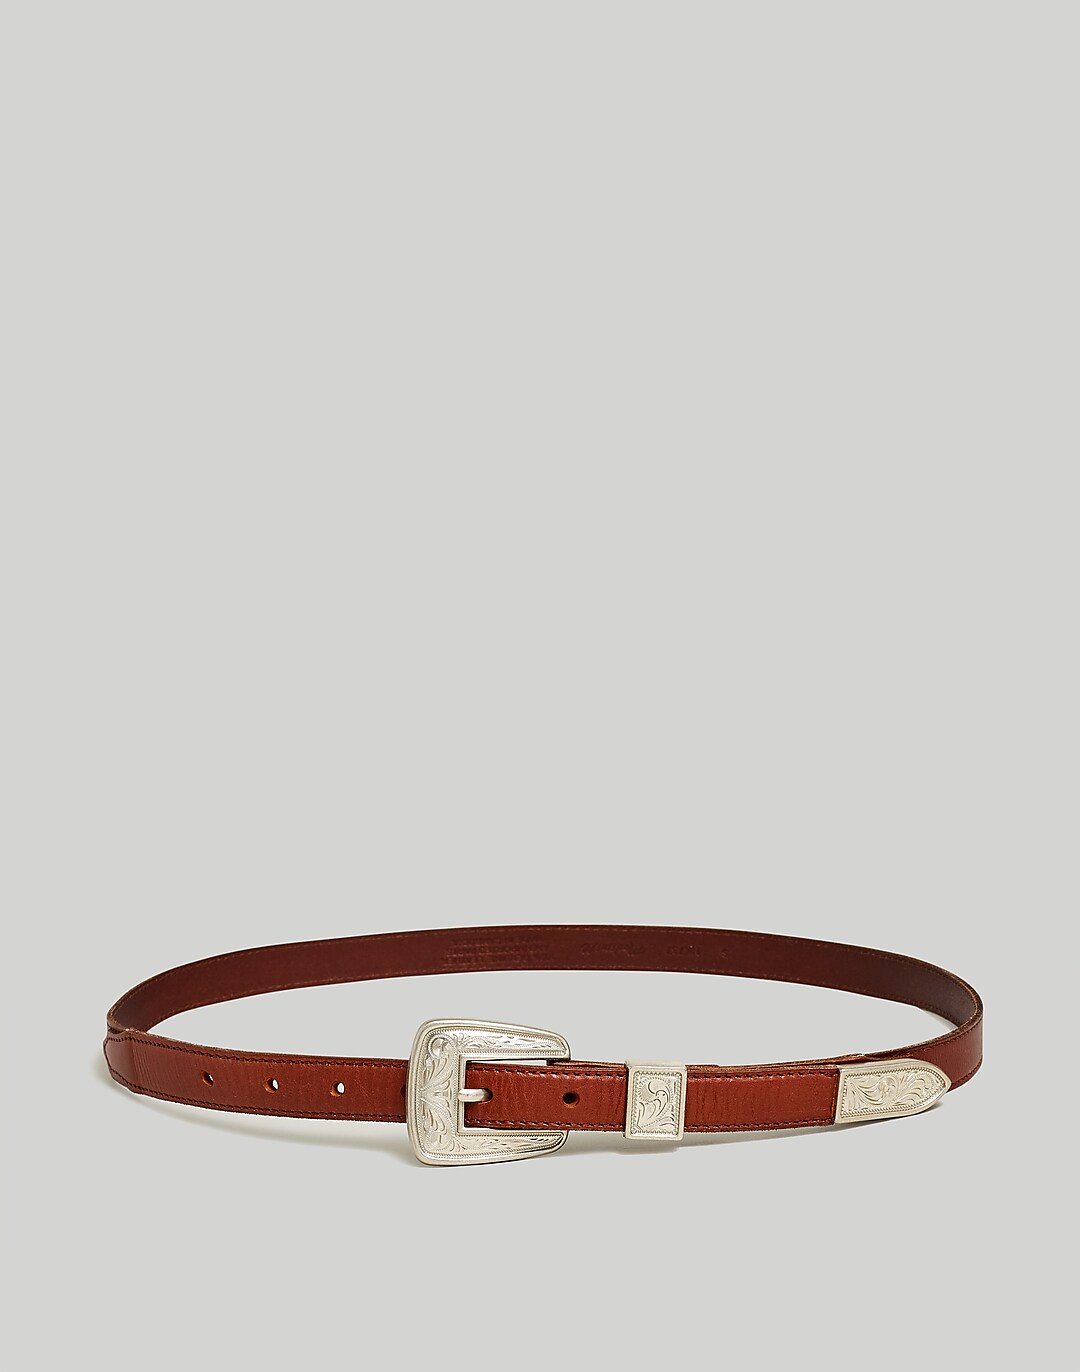 Handwoven honey leather belt, western belt for women - CD974RS